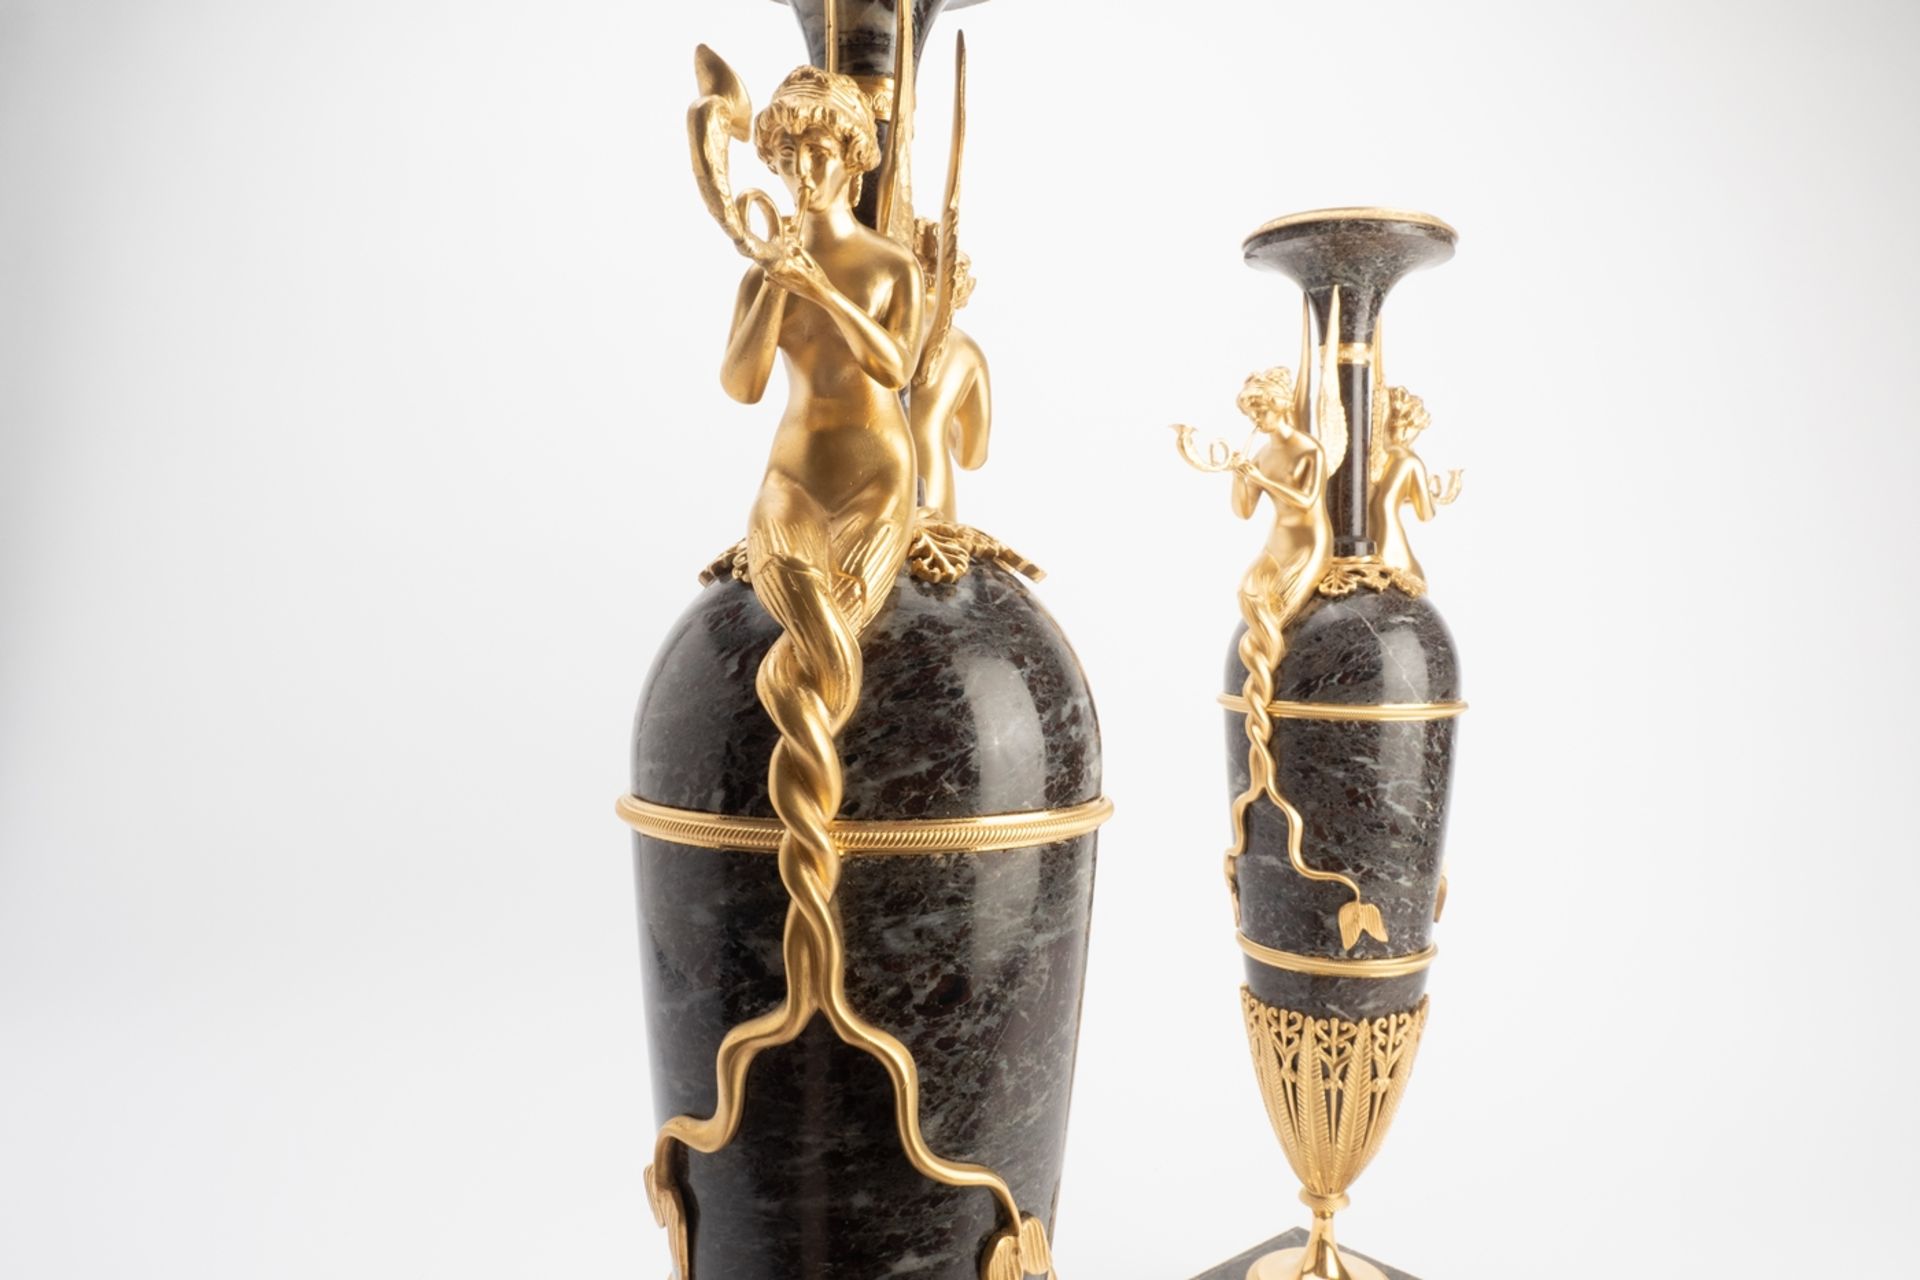 Feinste Empire Prunk Ziervasen | Empire ornate decorative vase - Image 12 of 12